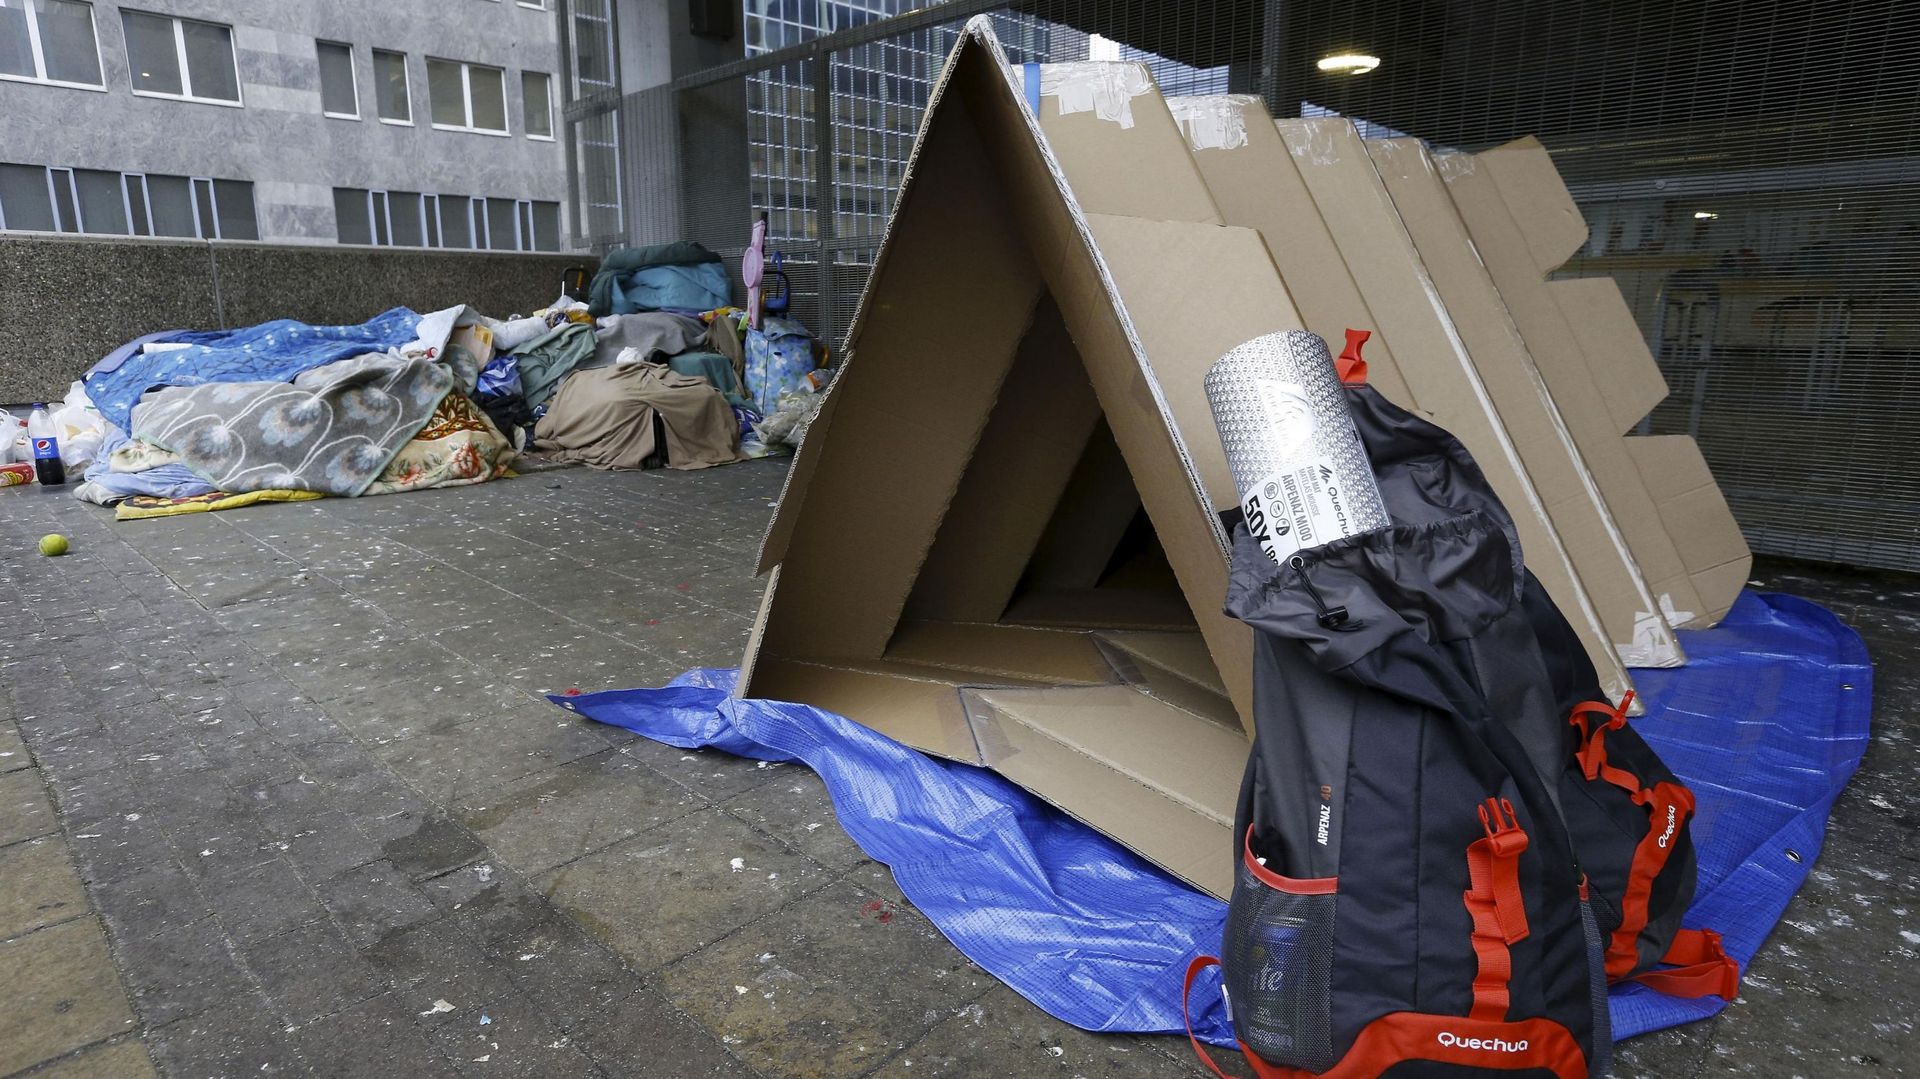 "A Bruxelles, 2600 personnes vivent dans la rue, sans compter les réfugiés", nous rappelle notre interlocuteur.